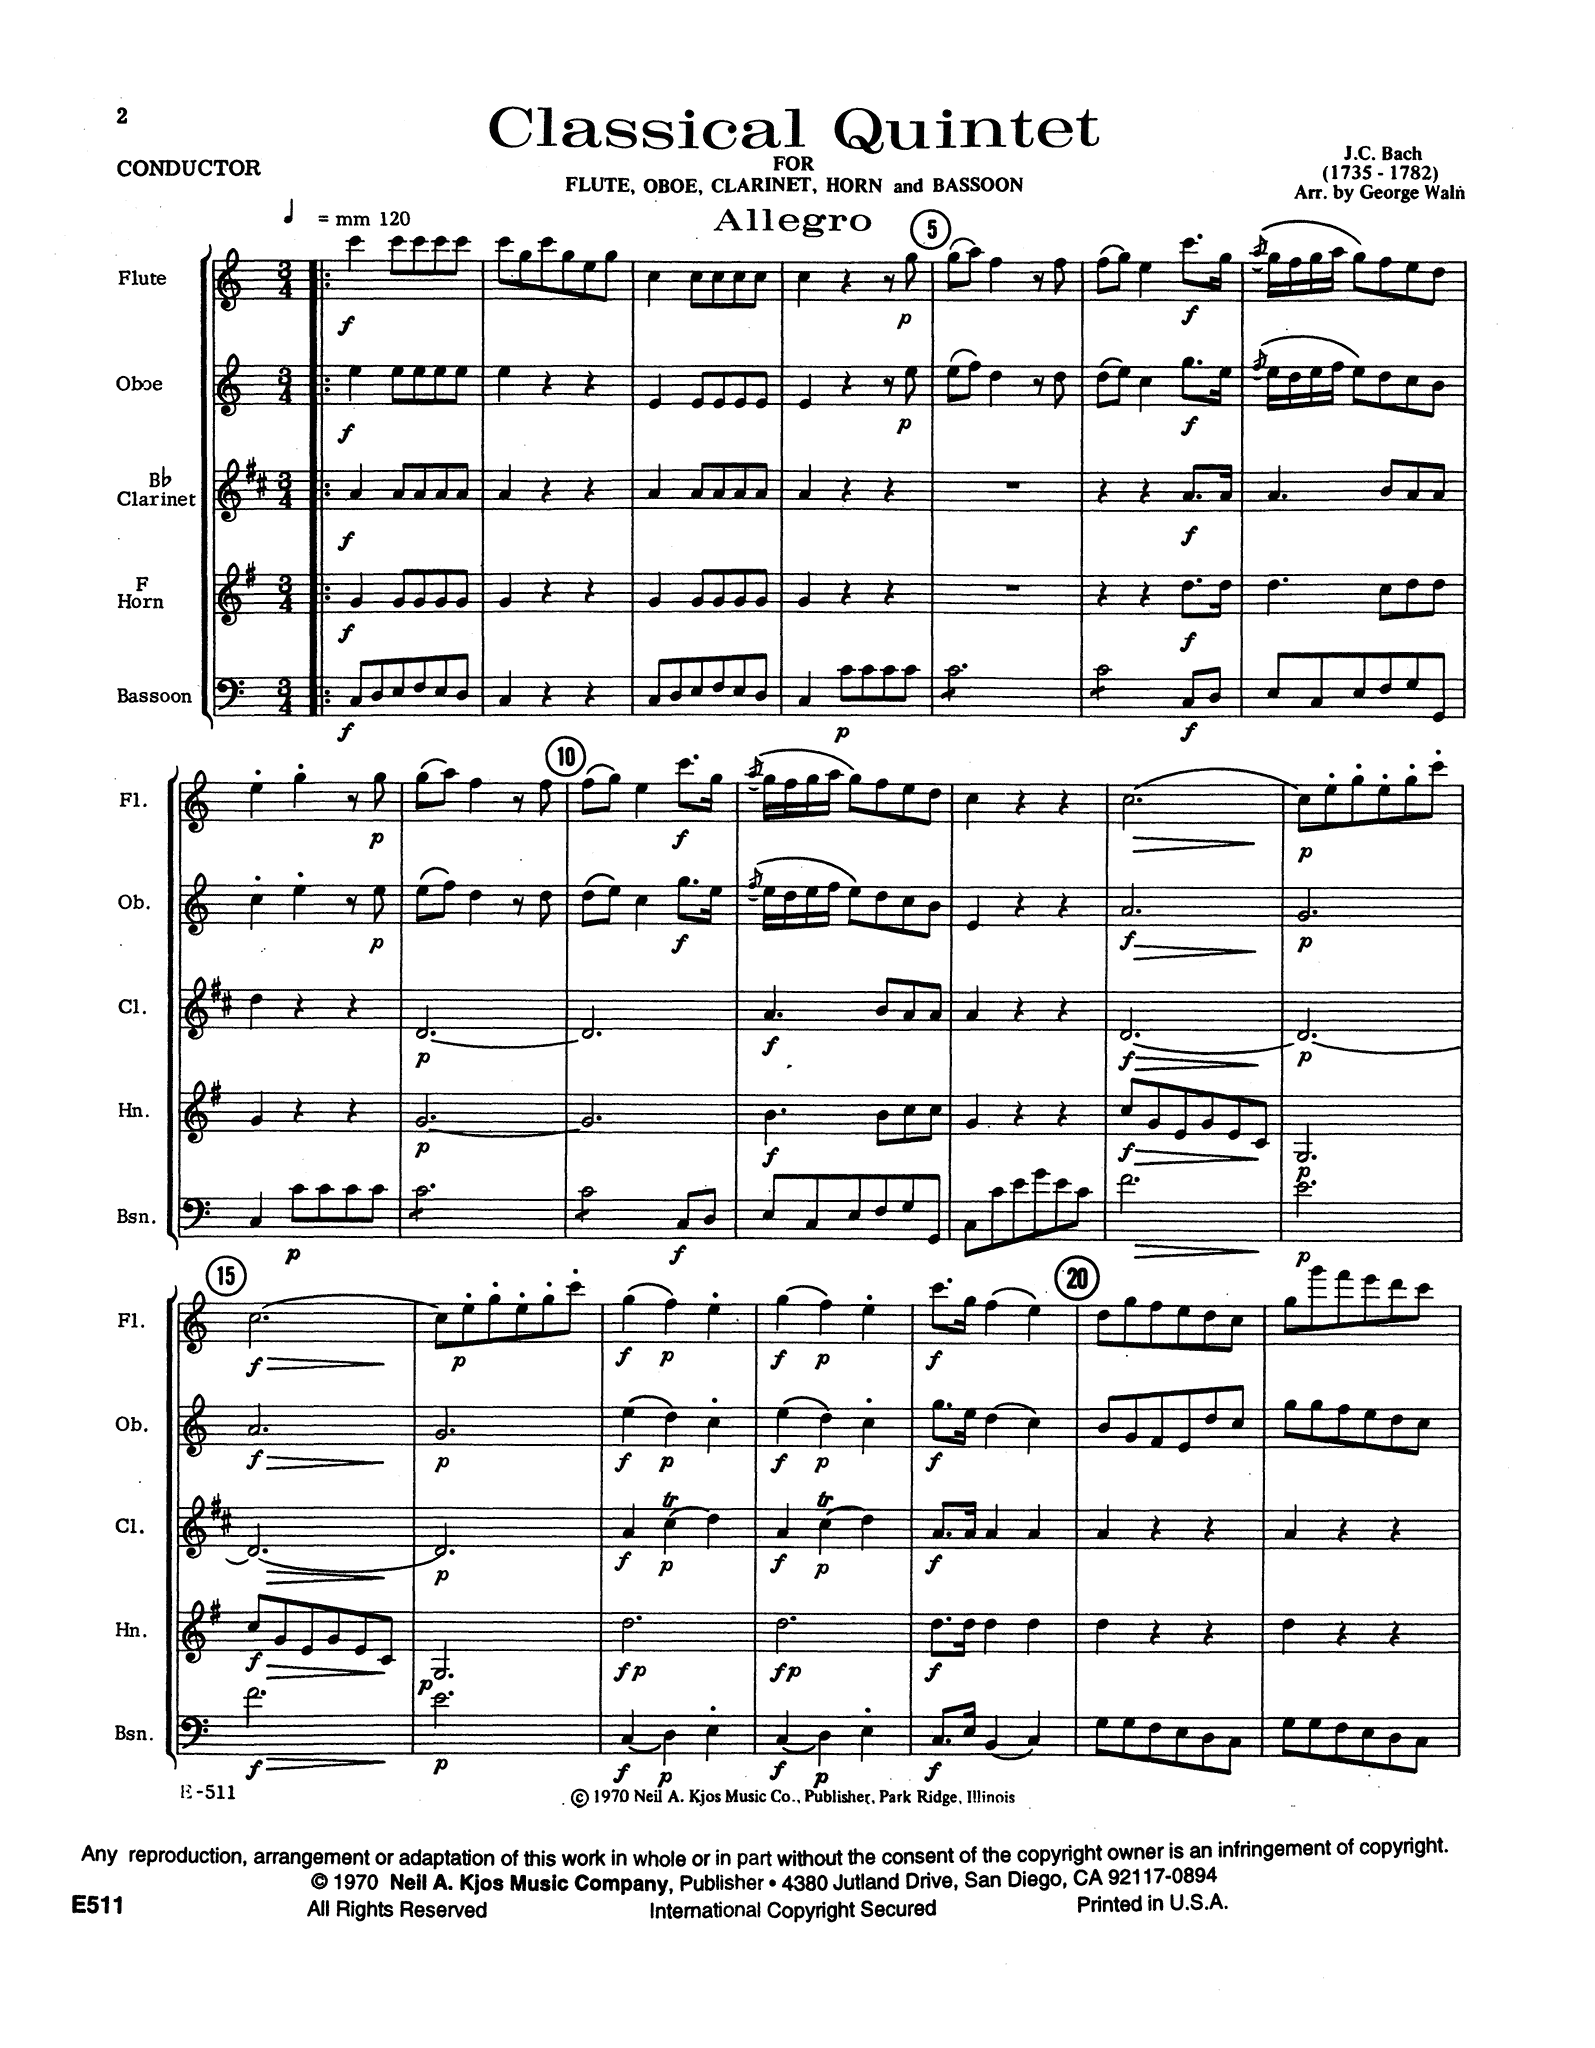 J. C. Bach Military Quintet No. 3 W. B81 wind quintet arrangement - Movement 1